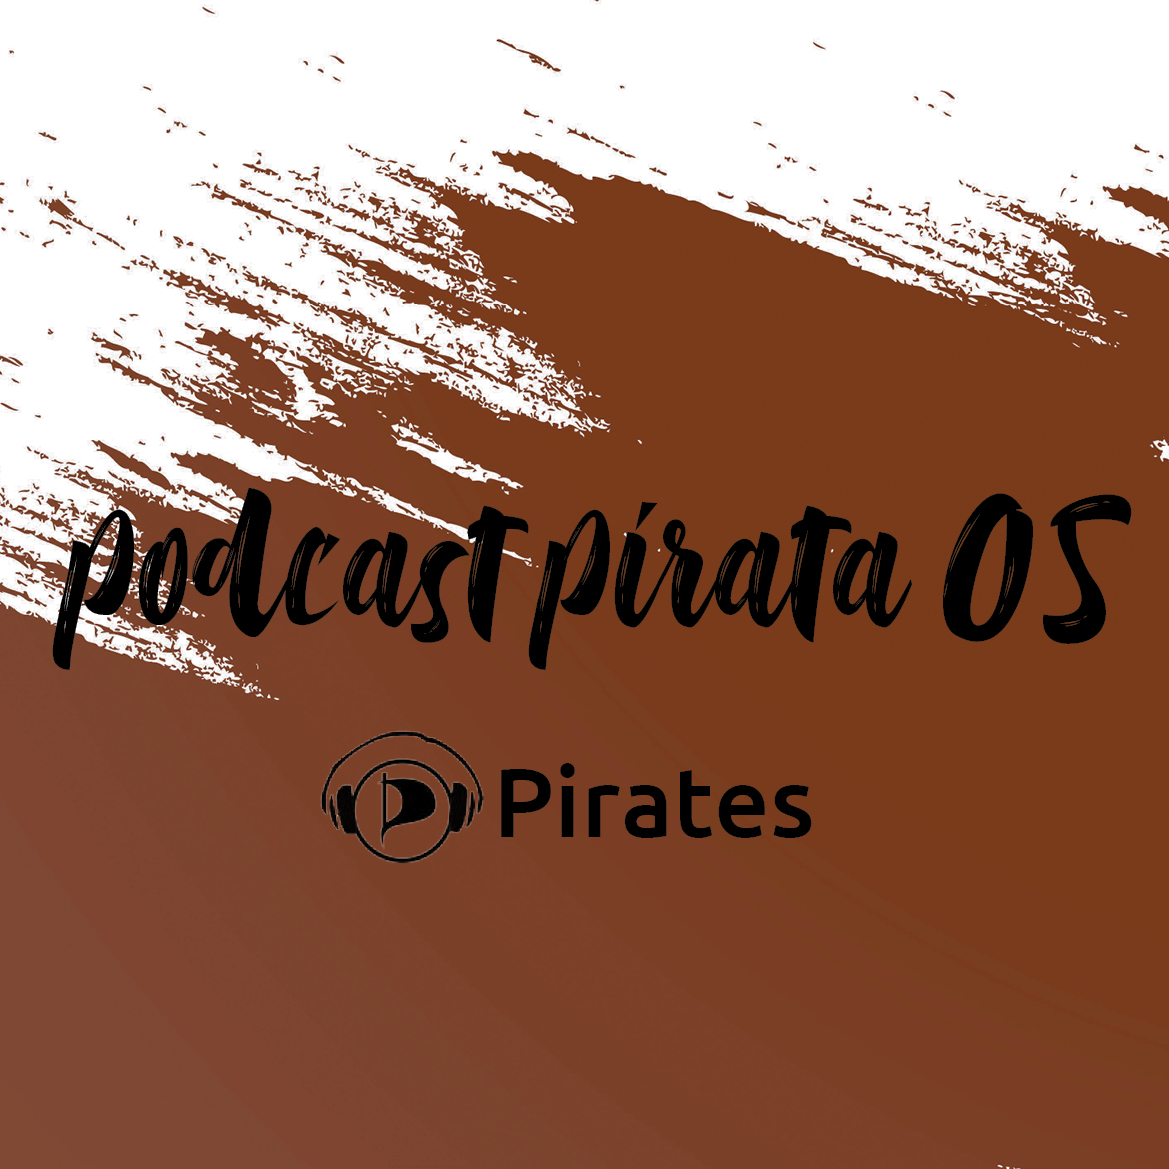 Podcast Pirata 05